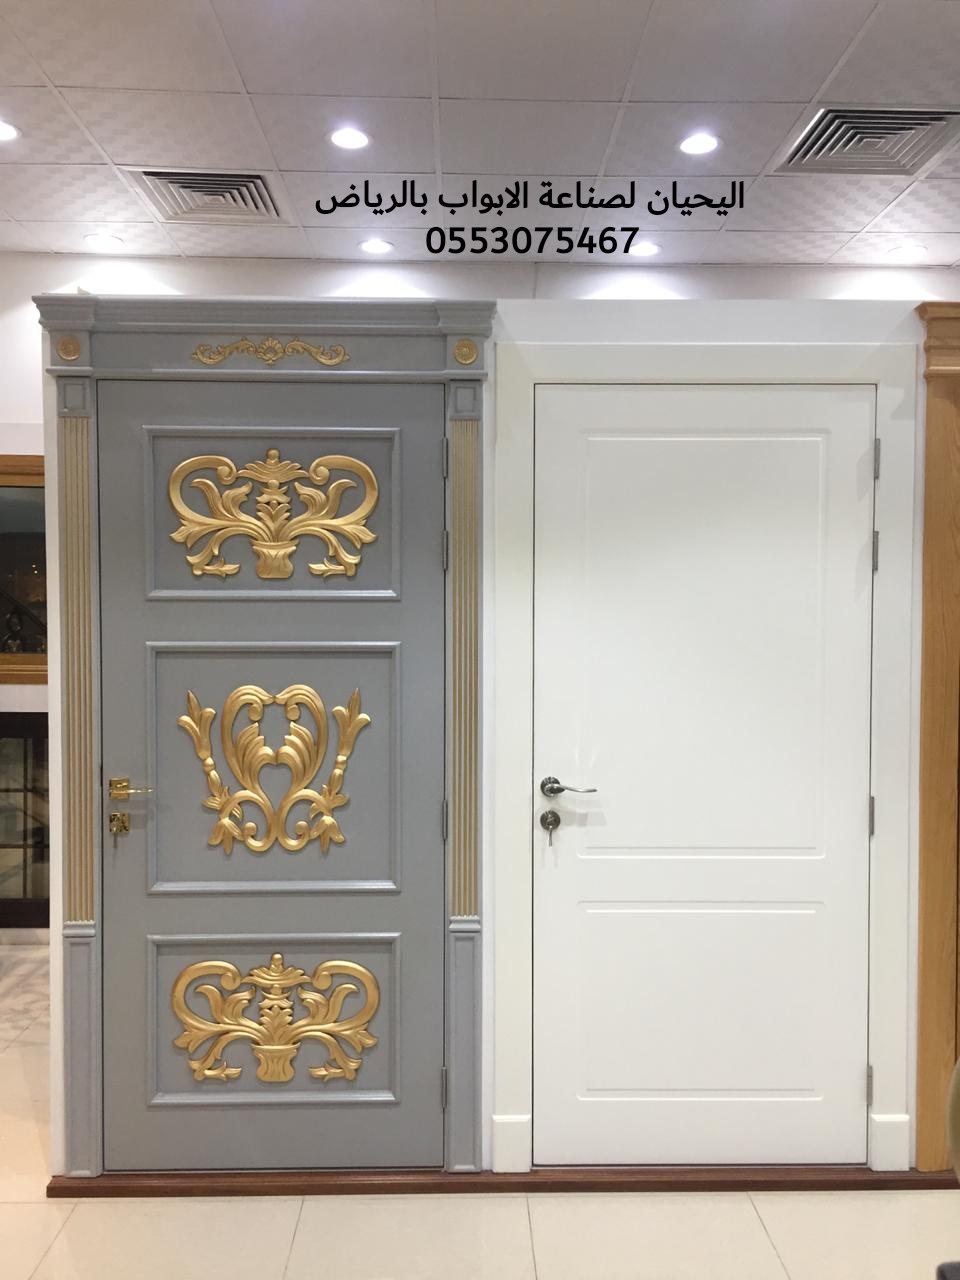 اليحيان لتصنيع وتفصيل أبواب خشب بالرياض 0553075467 أبواب حديد للبيع في الرياض،ابواب ليزر للبيع بالرياض P_15509l7hc6